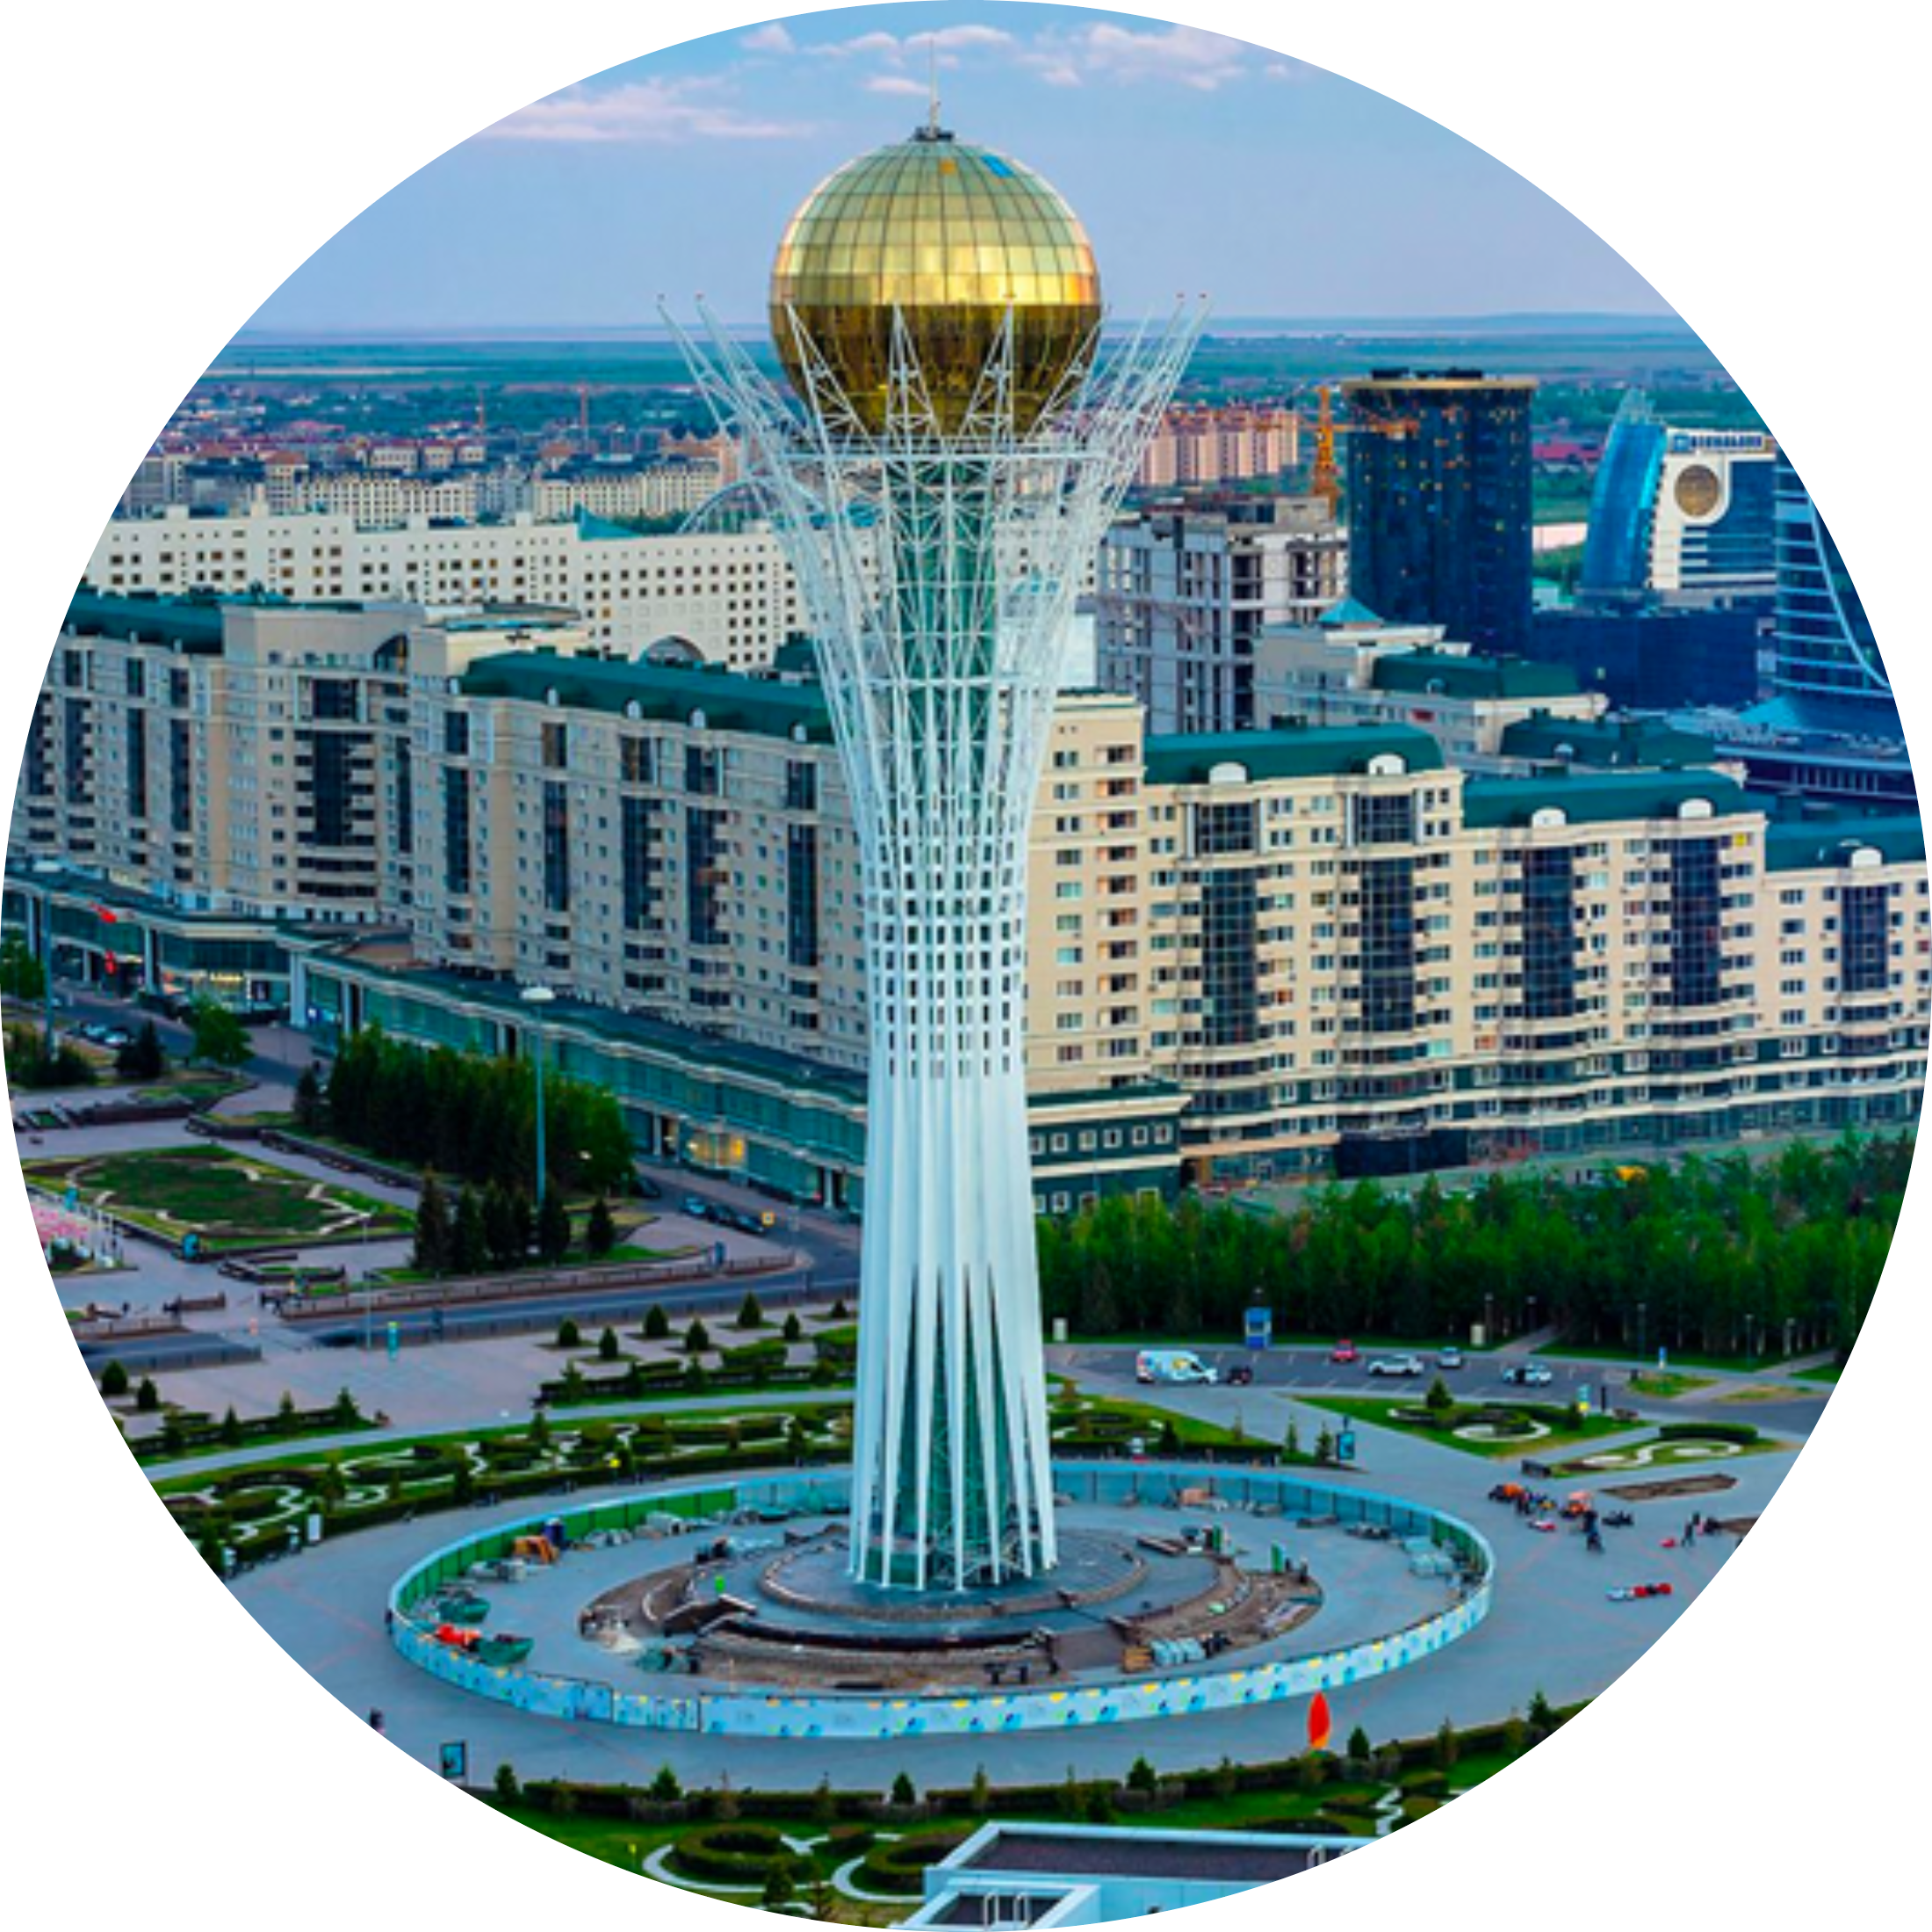 Why Kazakhstan?